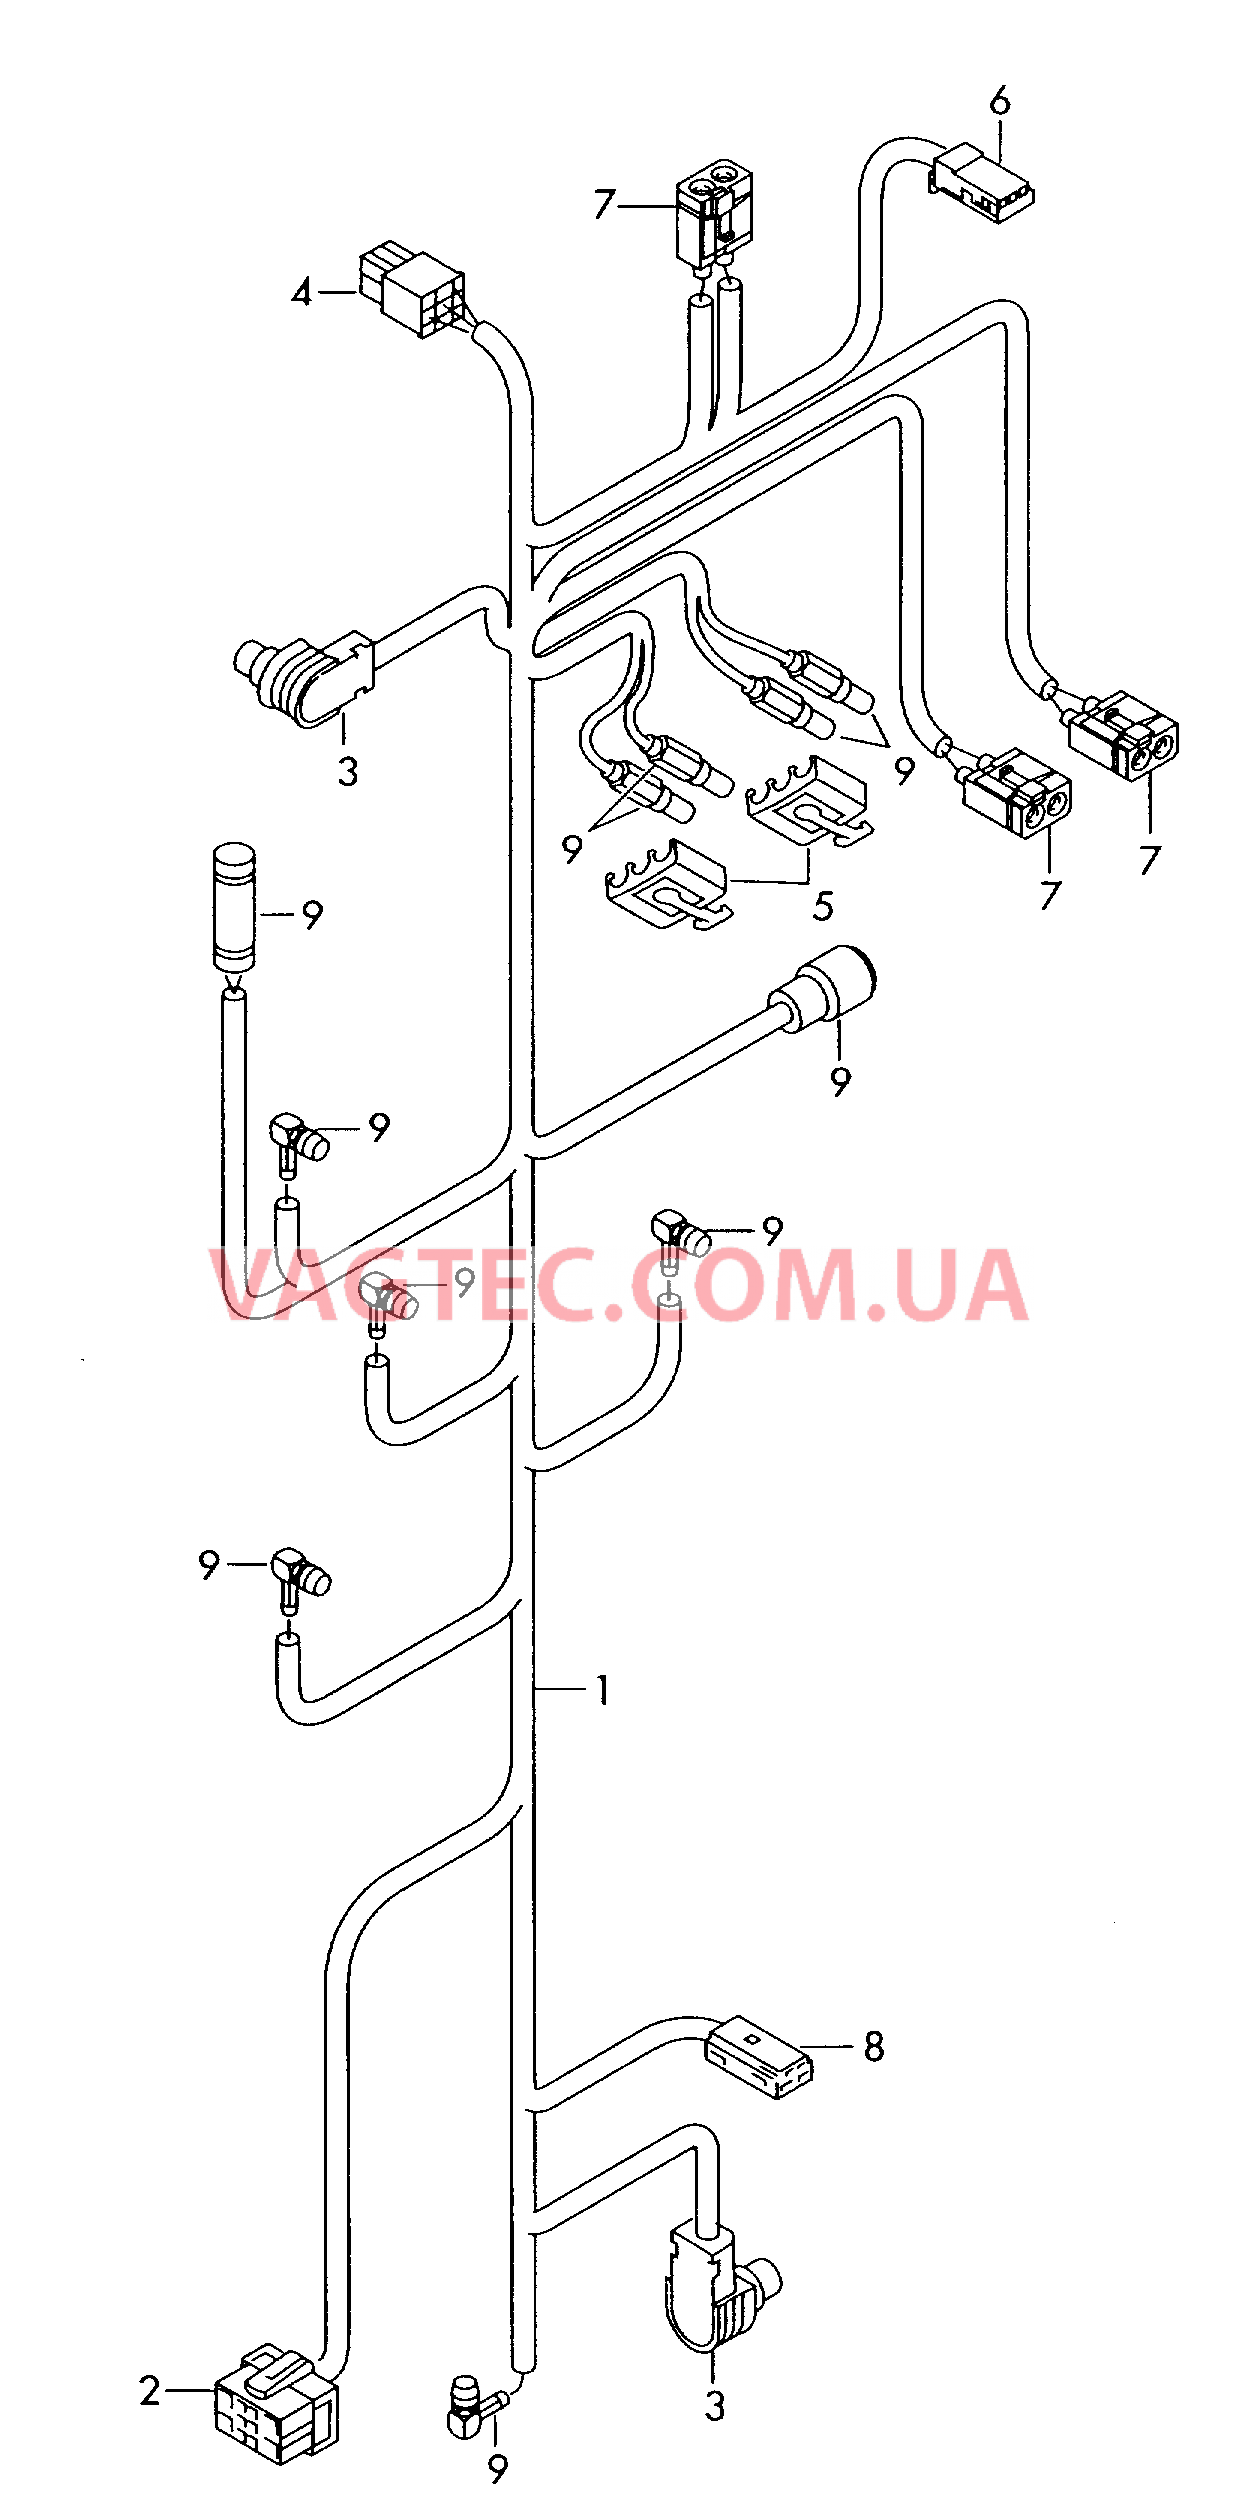 Жгут проводов для системы навигации с встроенной магнитолой  для AUDI RS4 2001